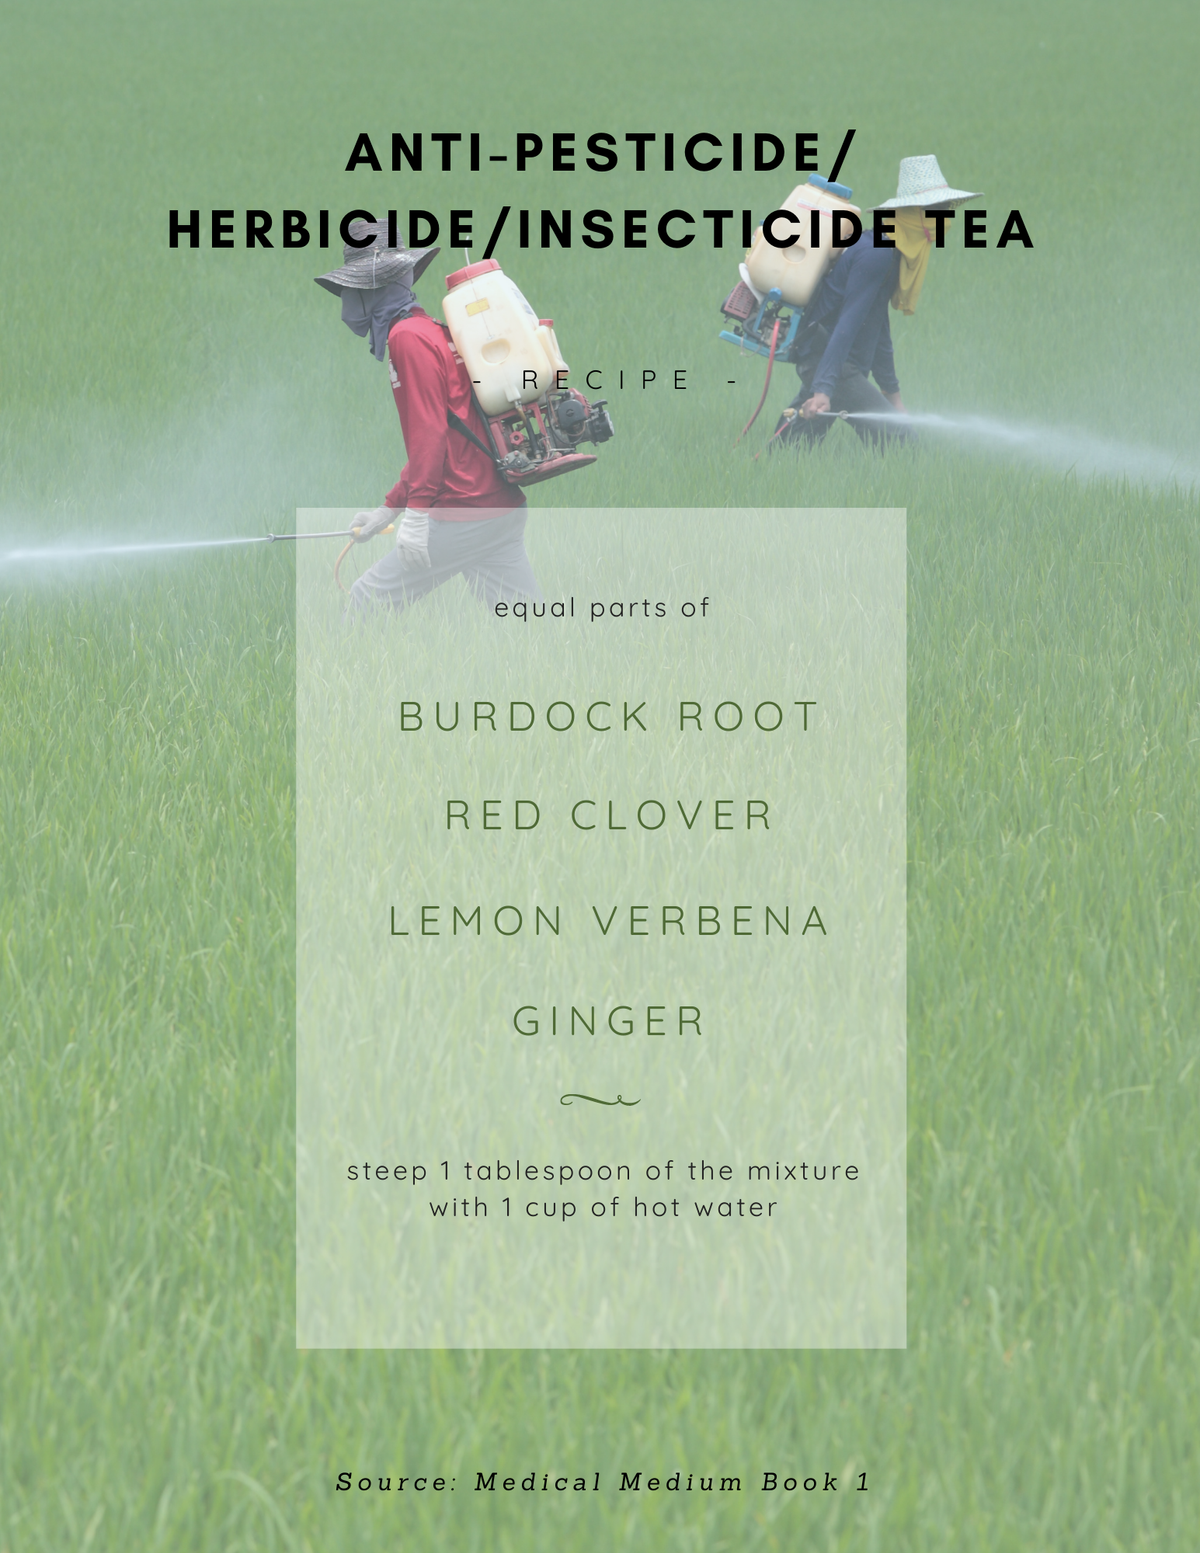 Anti-Pesticide/Herbicide/Insecticide Tea